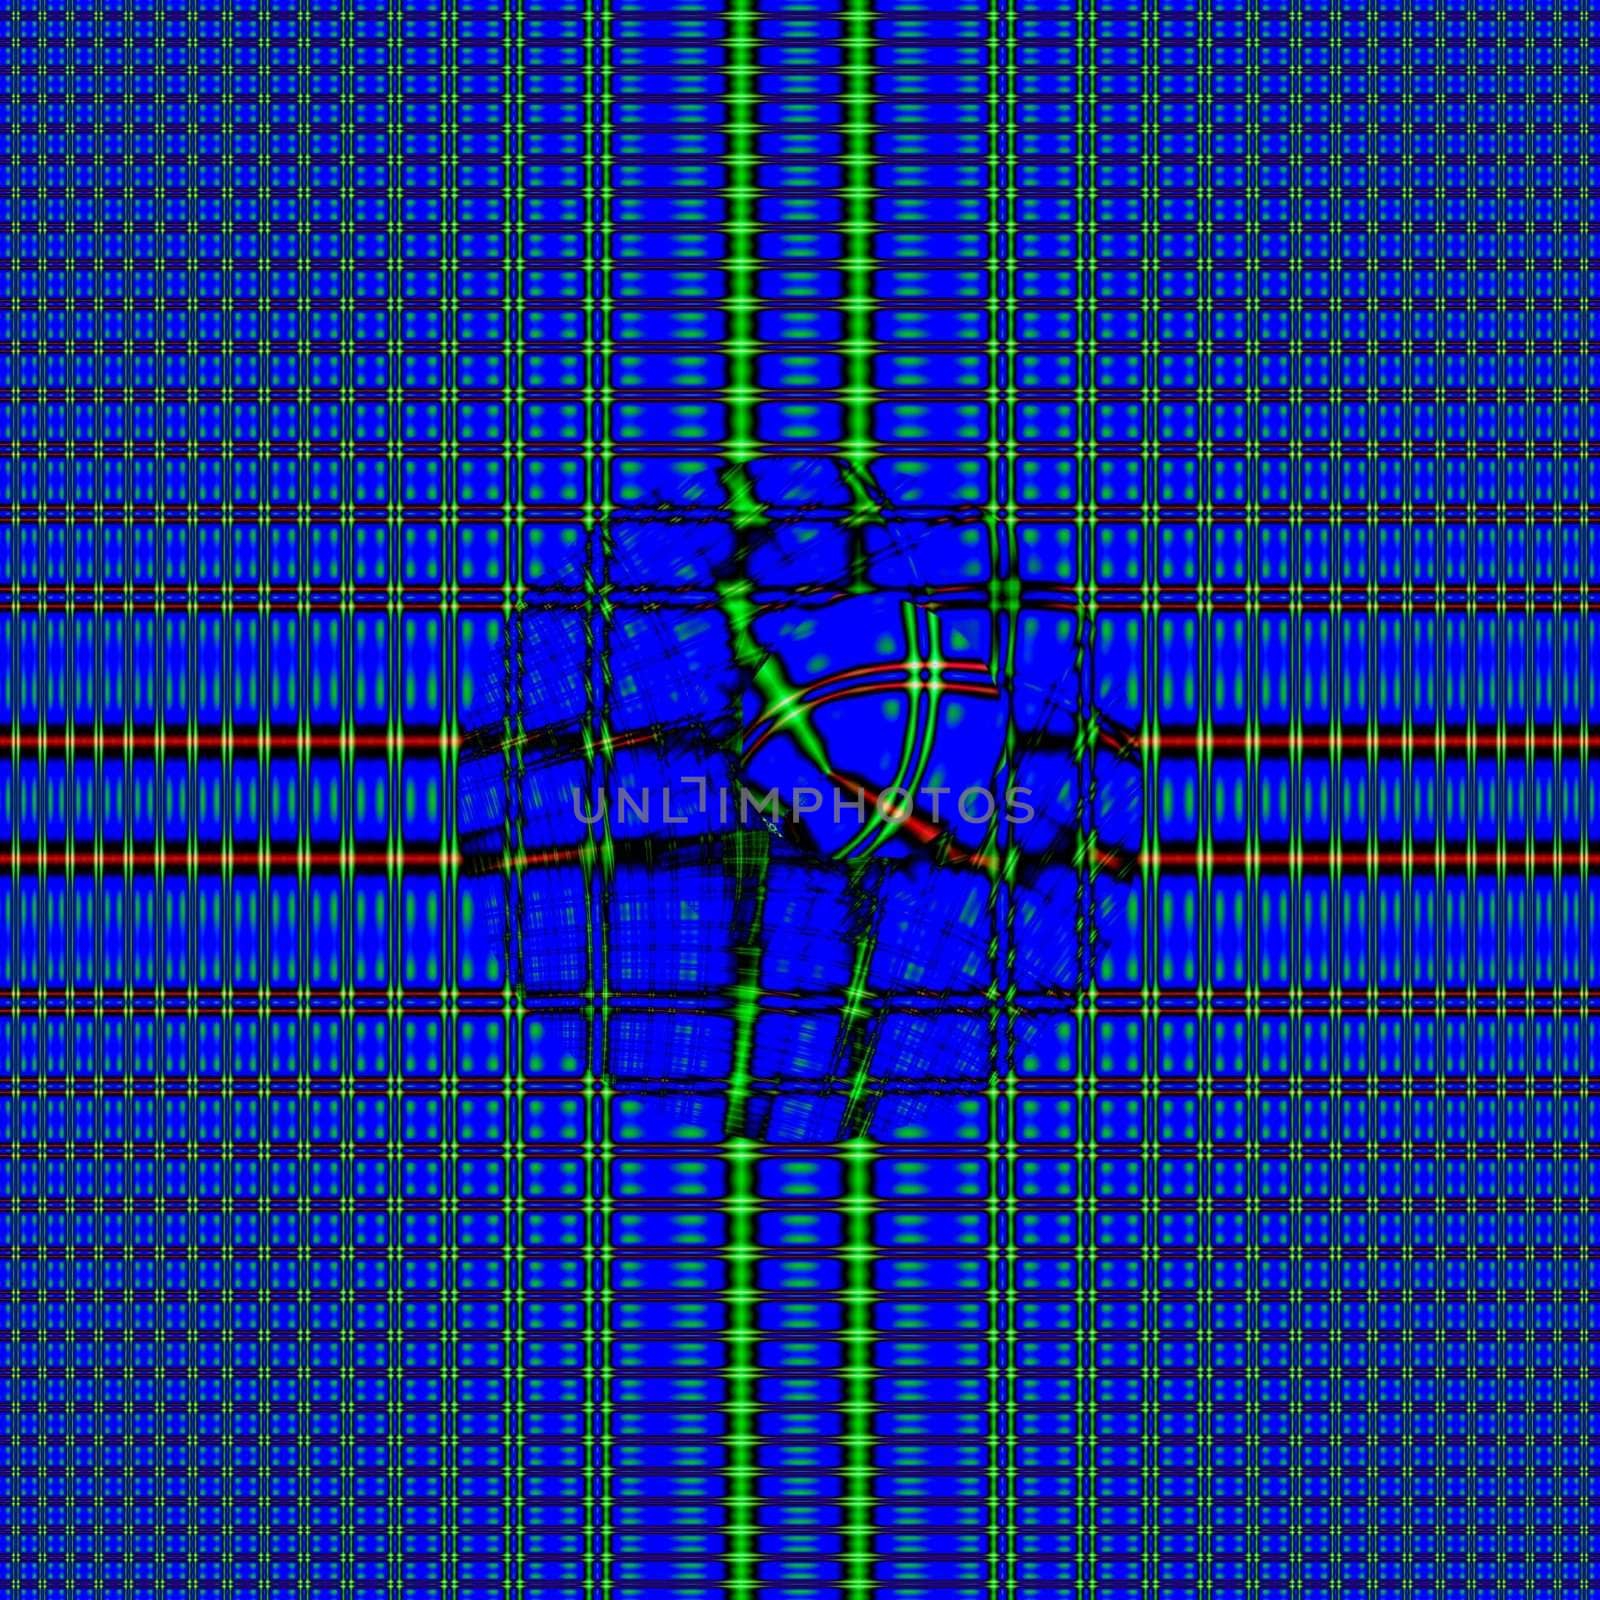 drop on a grid, fractal background